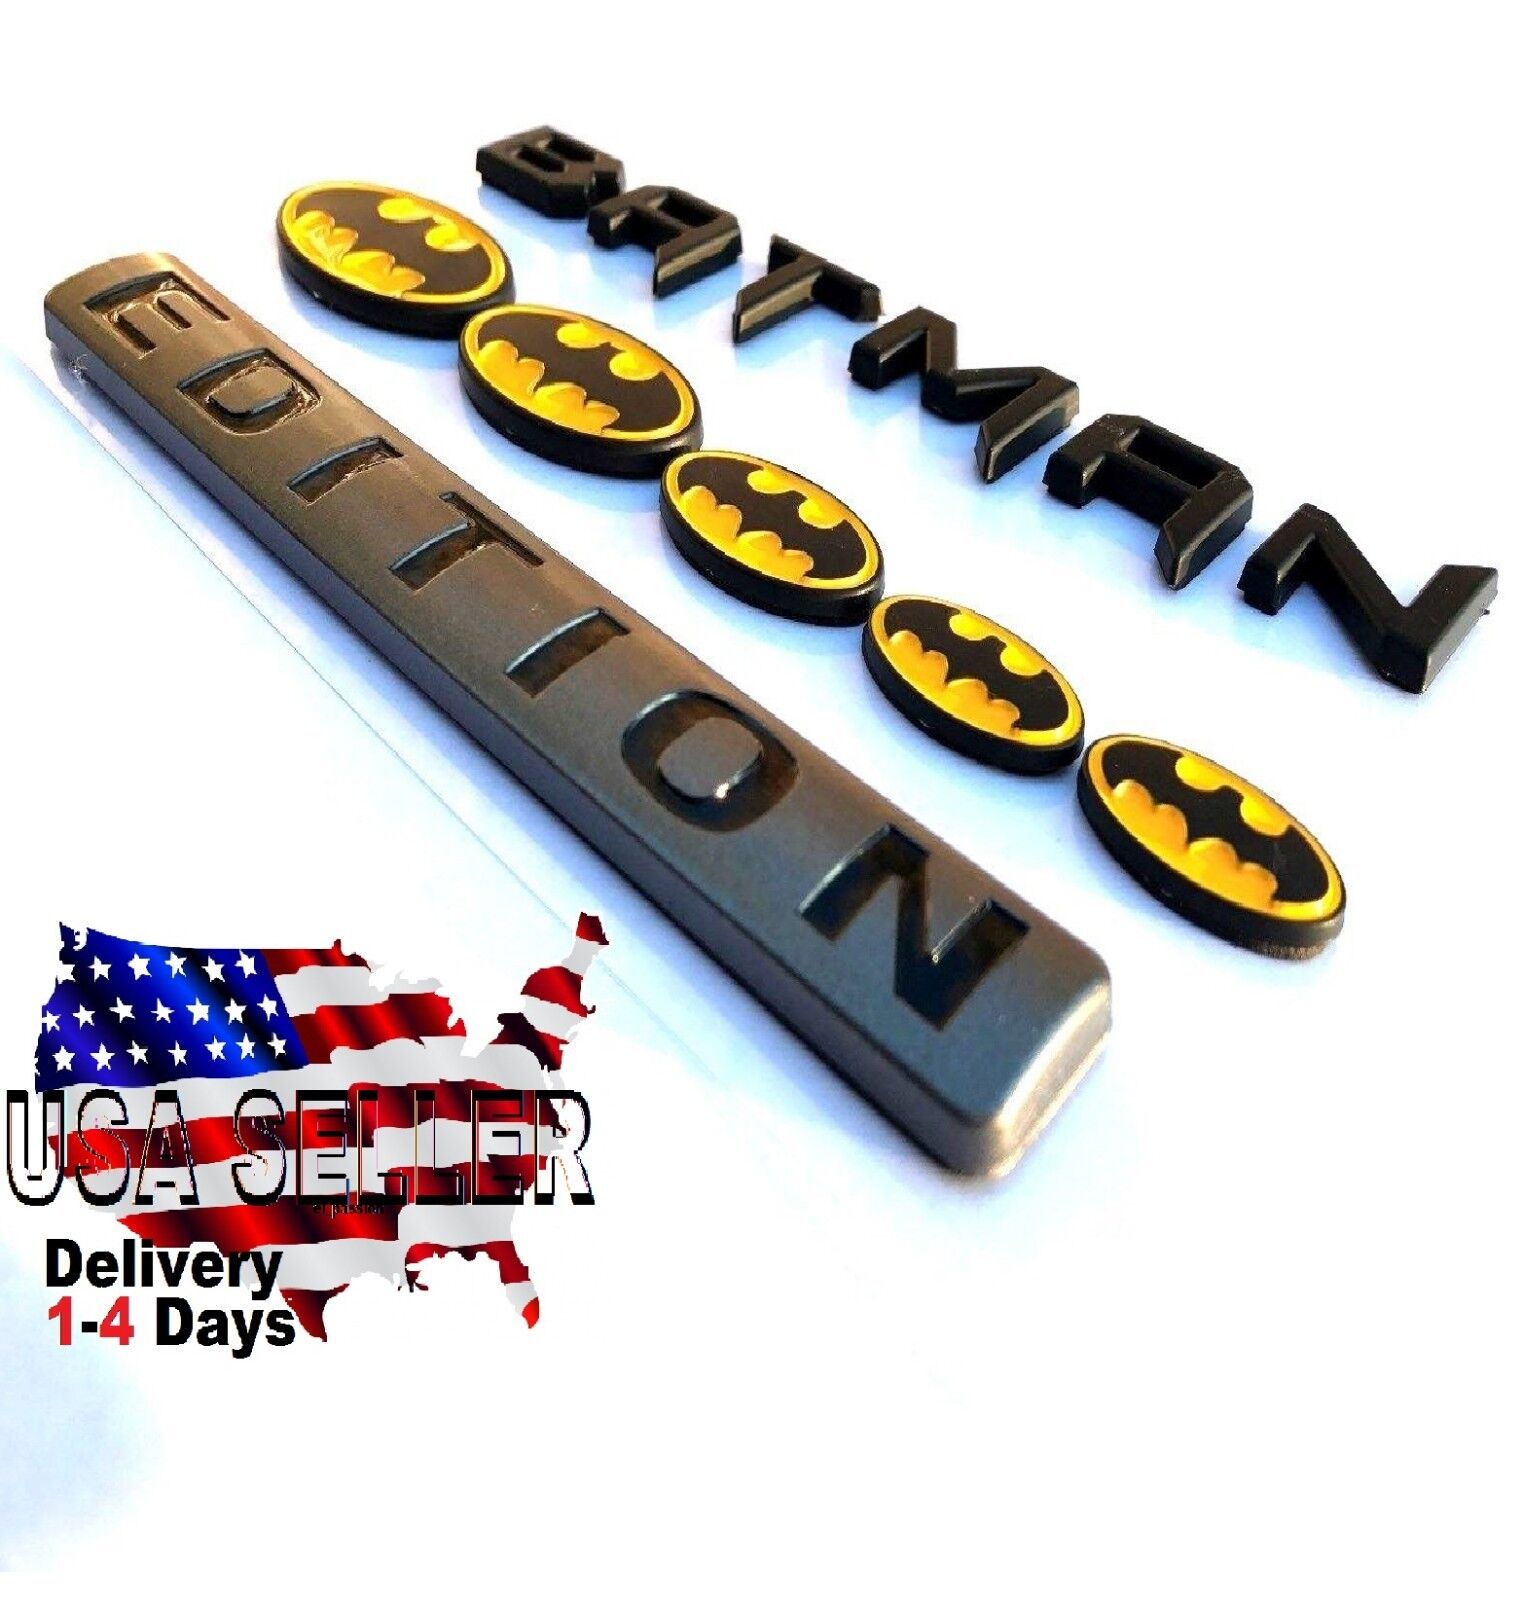 new* BATMAN FAMILY EDITION HIGH QUALITY DECAL Emblem CAR TRUCK bike SUV logo